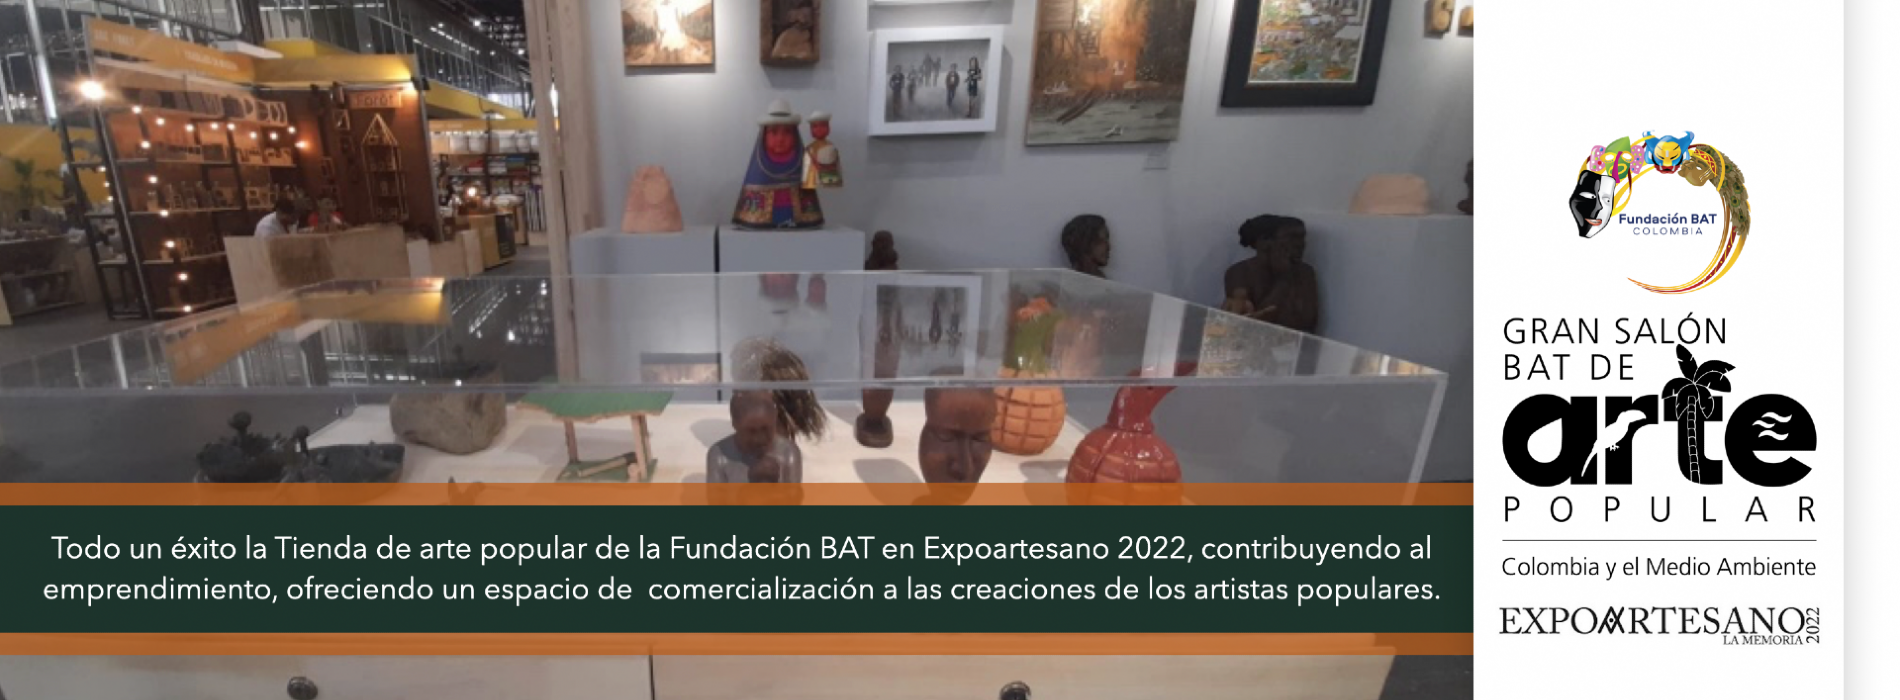 Tienda de arte popular en Expoartesano La Memoria 2022  